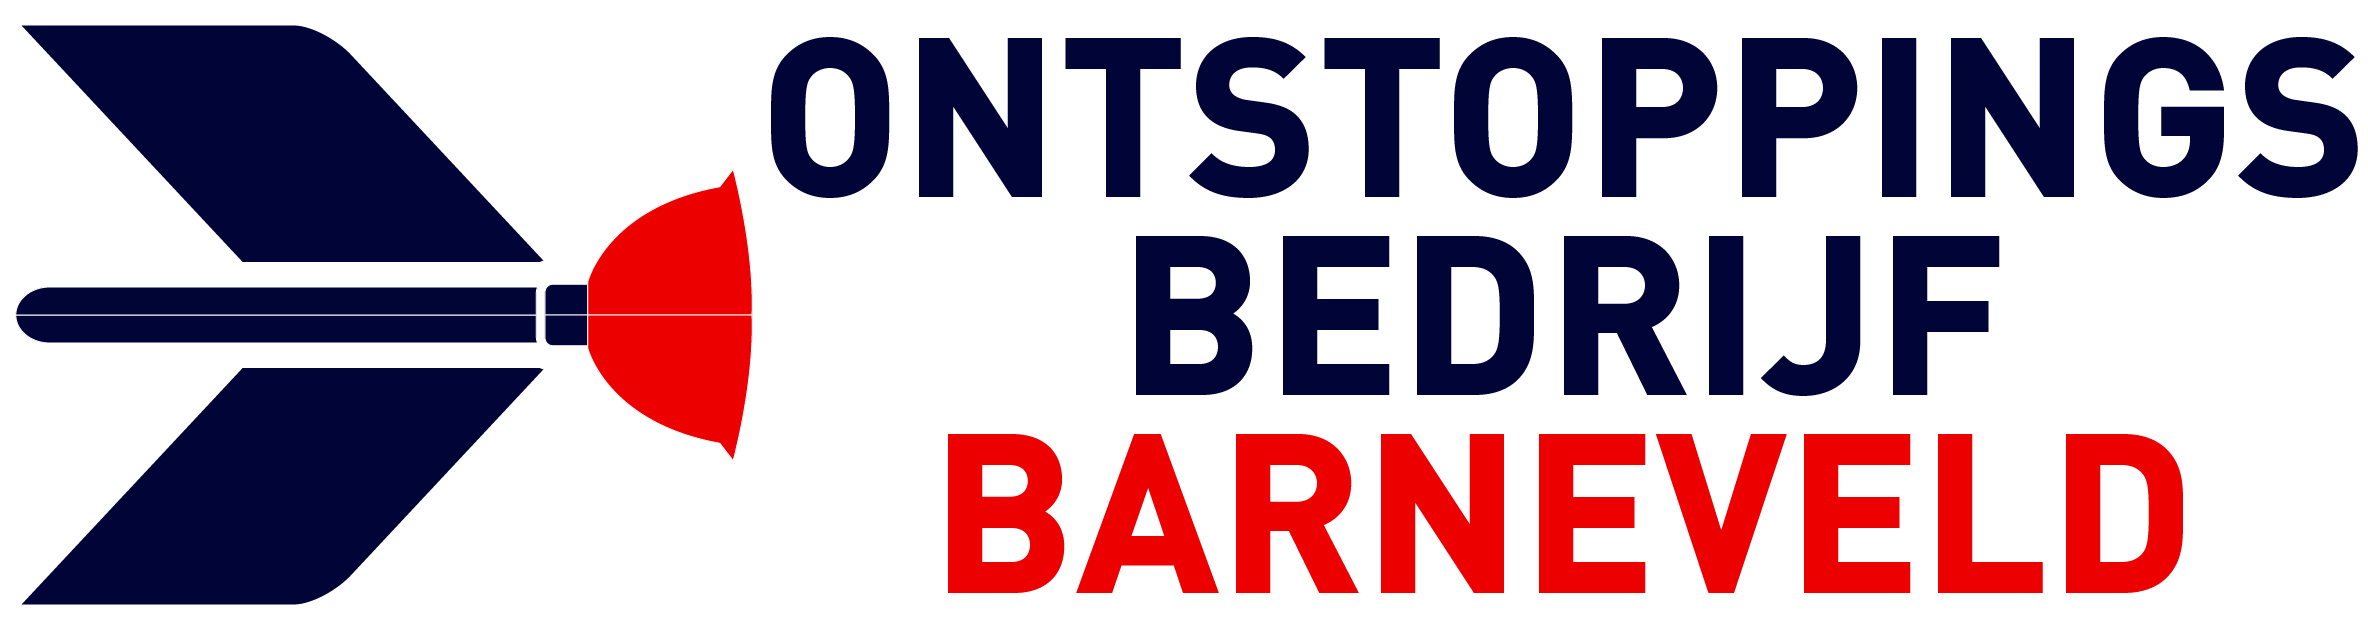 Ontstoppingsbedrijf Barneveld logo